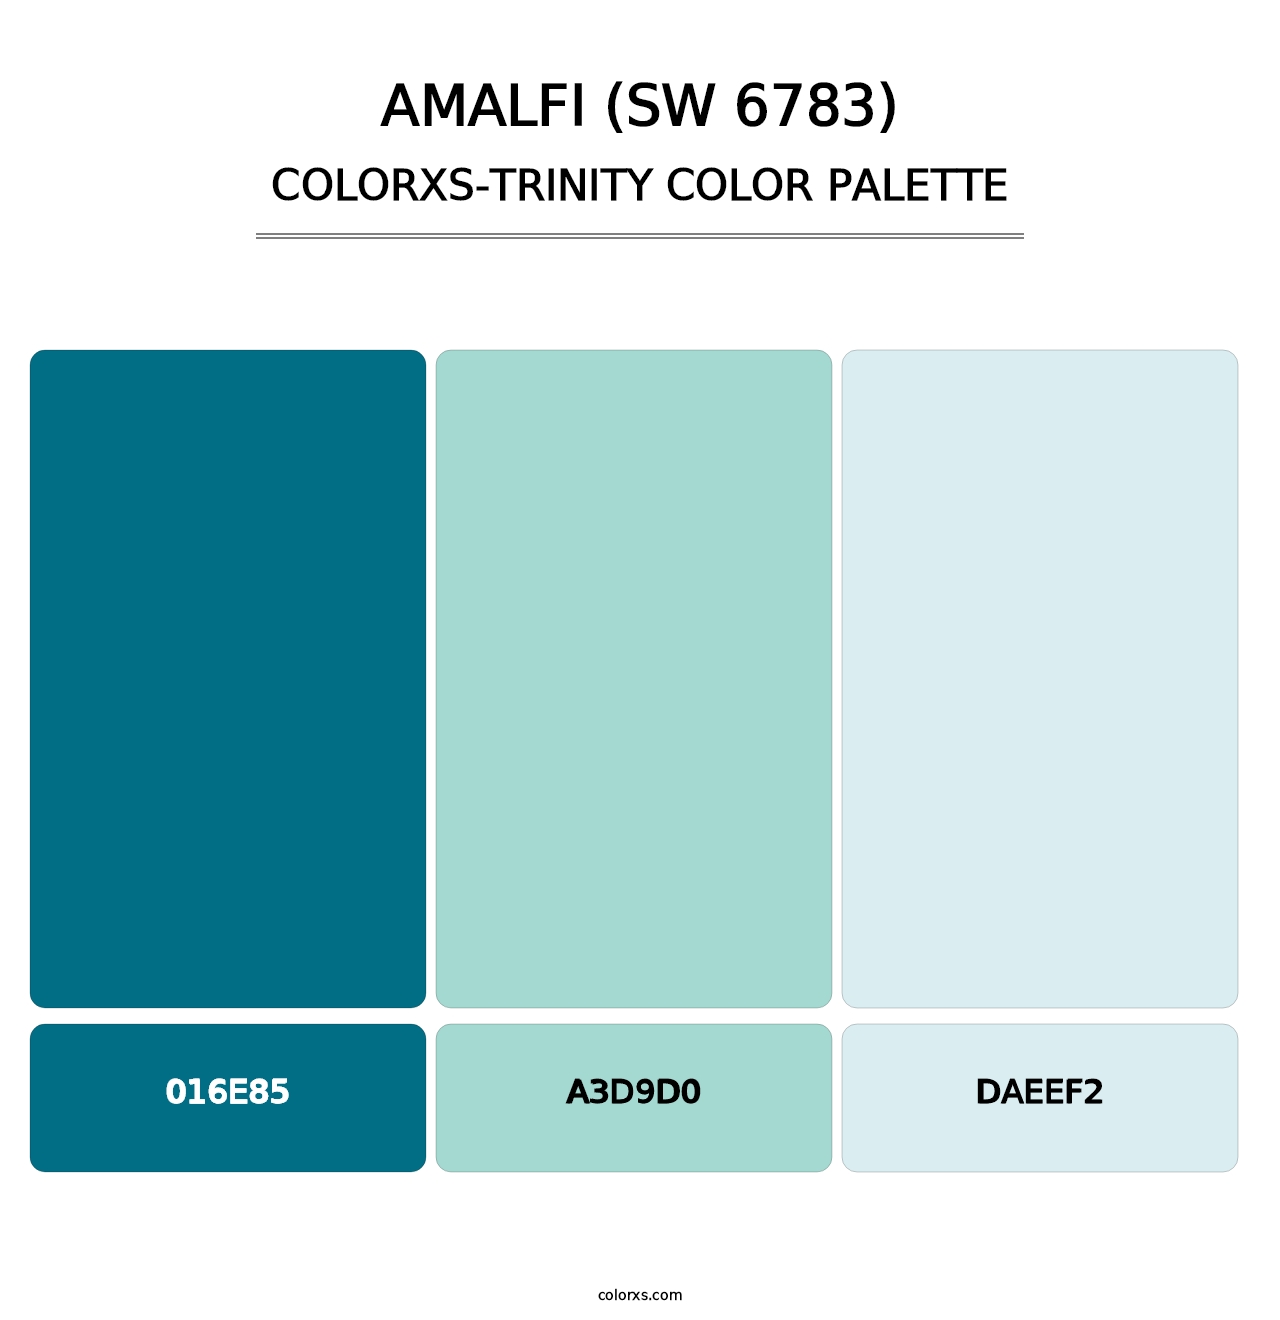 Amalfi (SW 6783) - Colorxs Trinity Palette